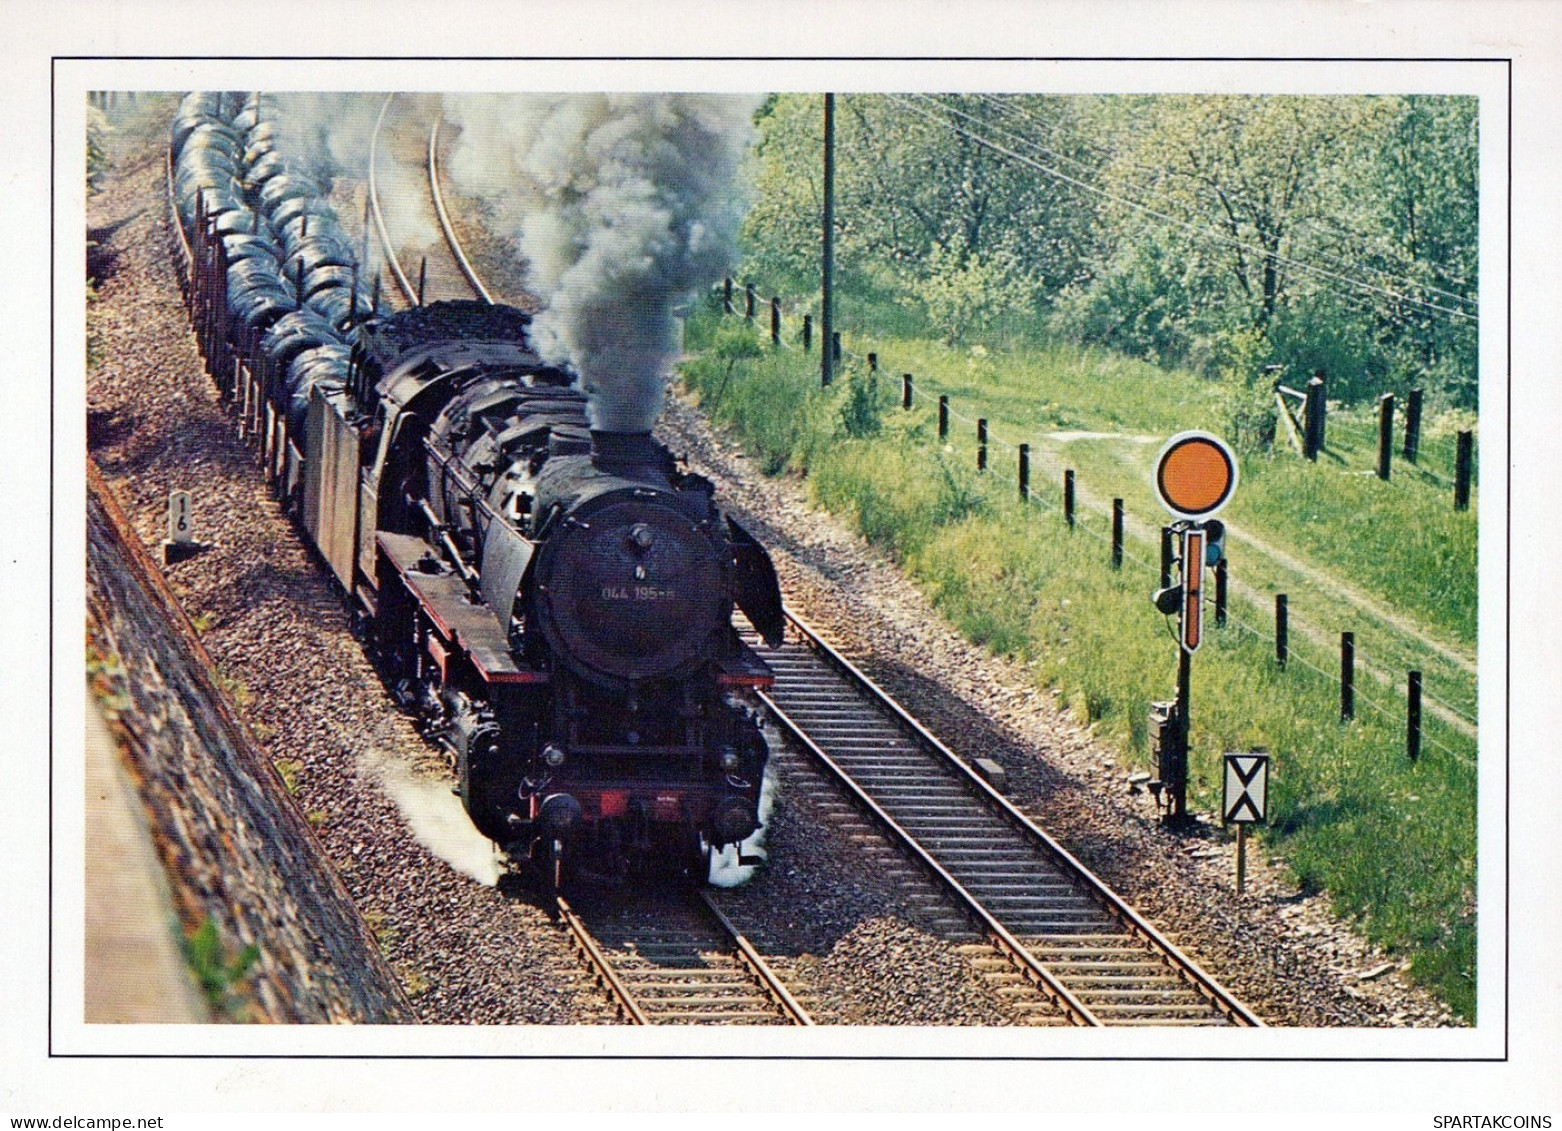 TRAIN RAILWAY Transport Vintage Postcard CPSM #PAA840.A - Eisenbahnen